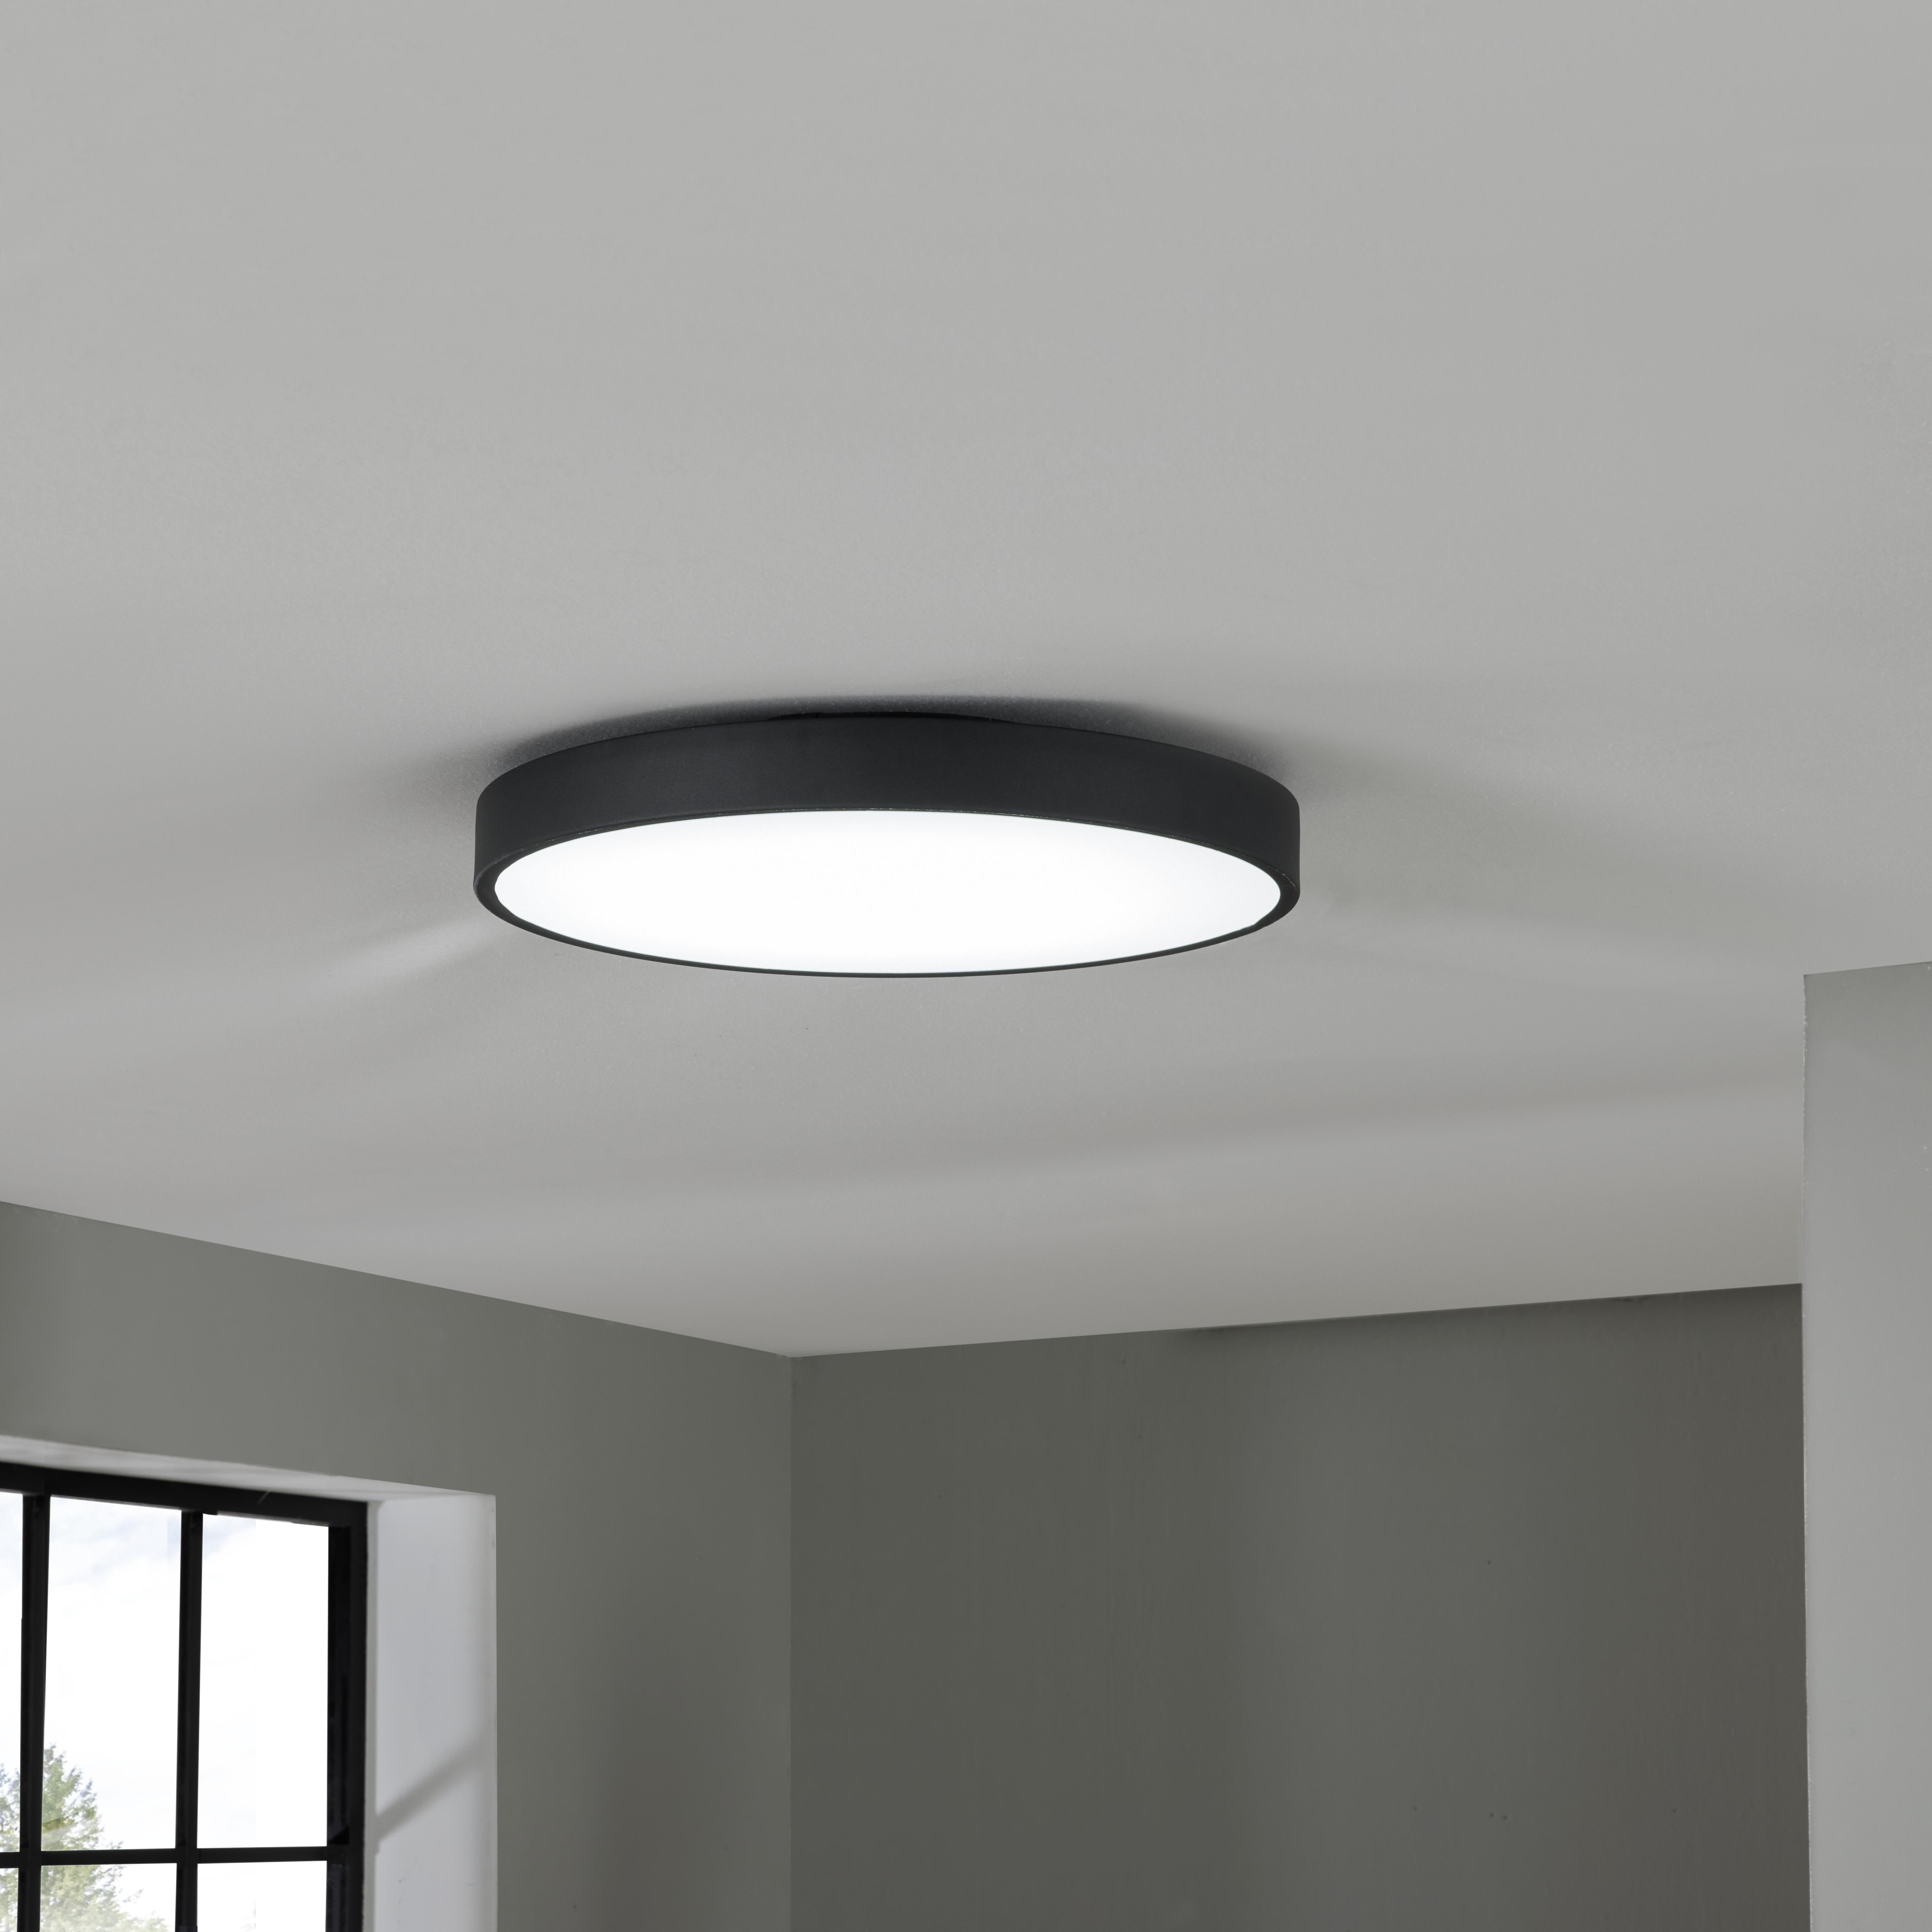 LED-Deckenleuchte Annella max. 24 Watt - Weiss/Schwarz, Modern, Kunststoff/Metall (50/8,5cm) - Premium Living